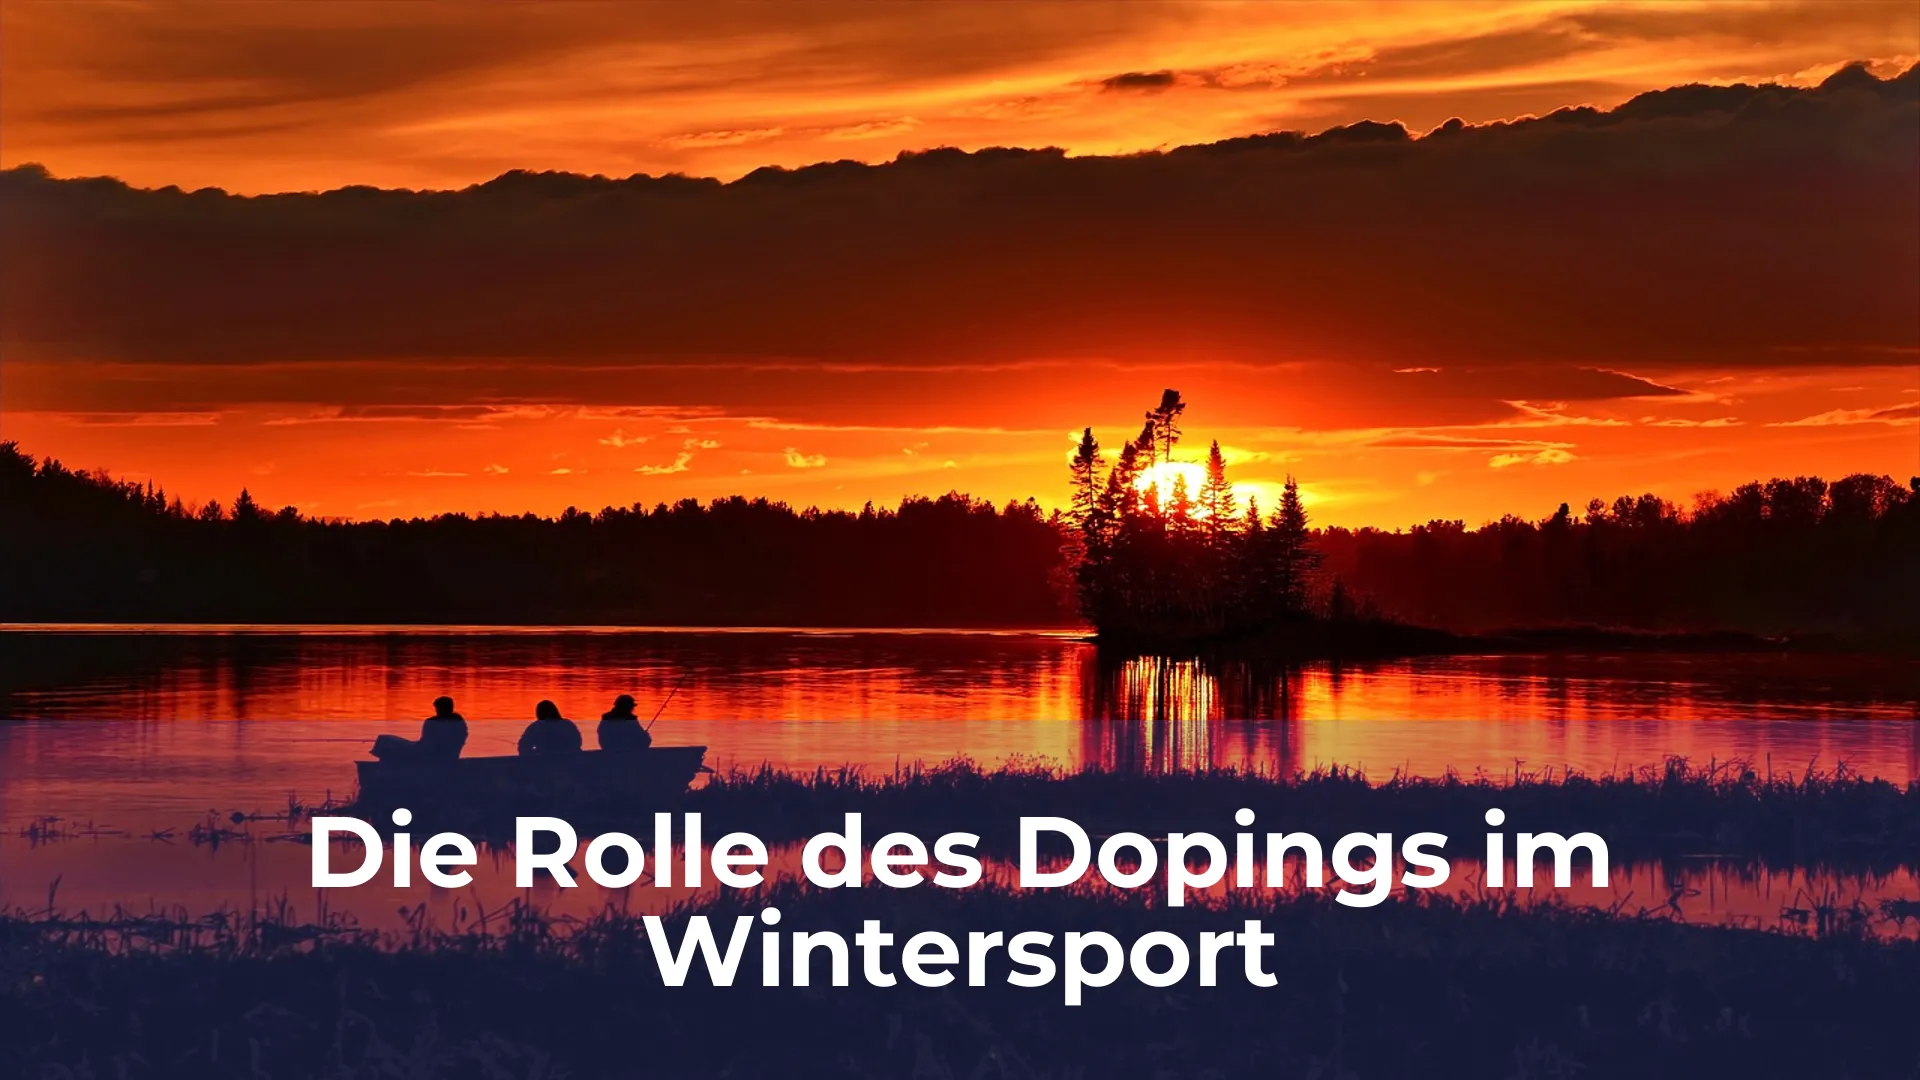 Die rolle des dopings im wintersport